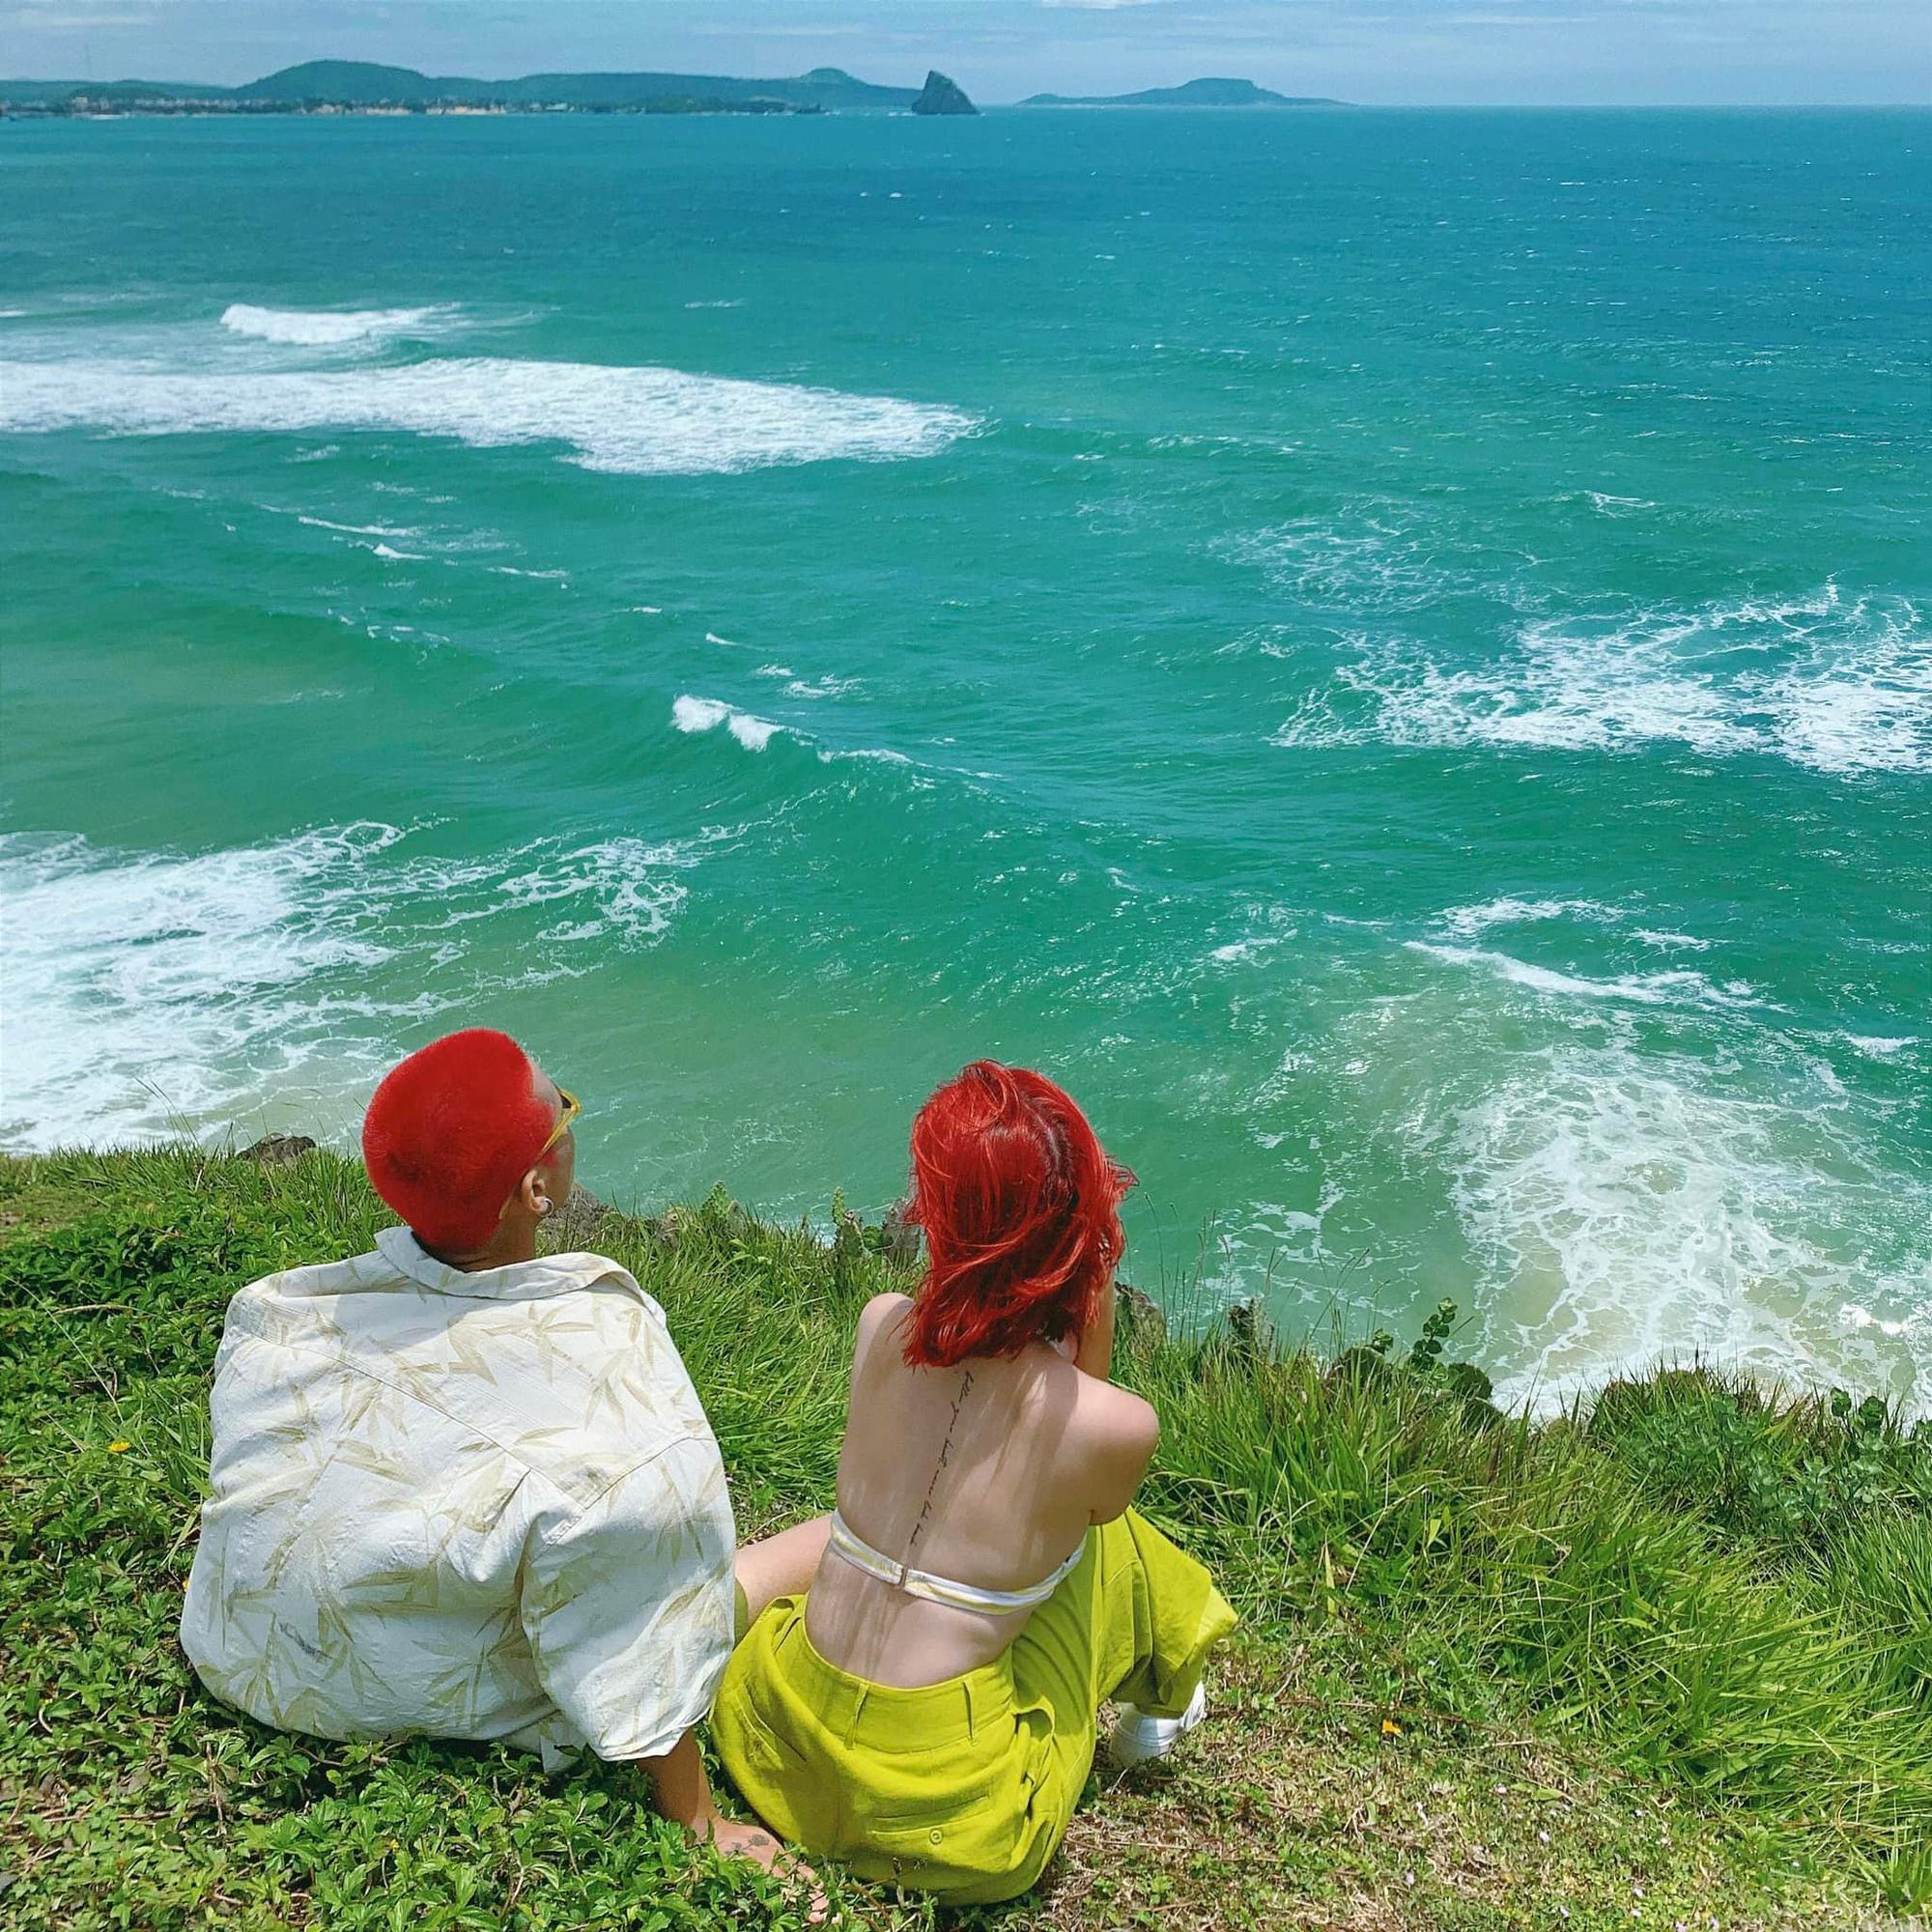 Bộ ảnh check-in của cặp đôi “đầu đỏ giữa biển xanh” nổi nhất MXH hiện nay, concept du lịch lý tưởng hè này! - Ảnh 3.